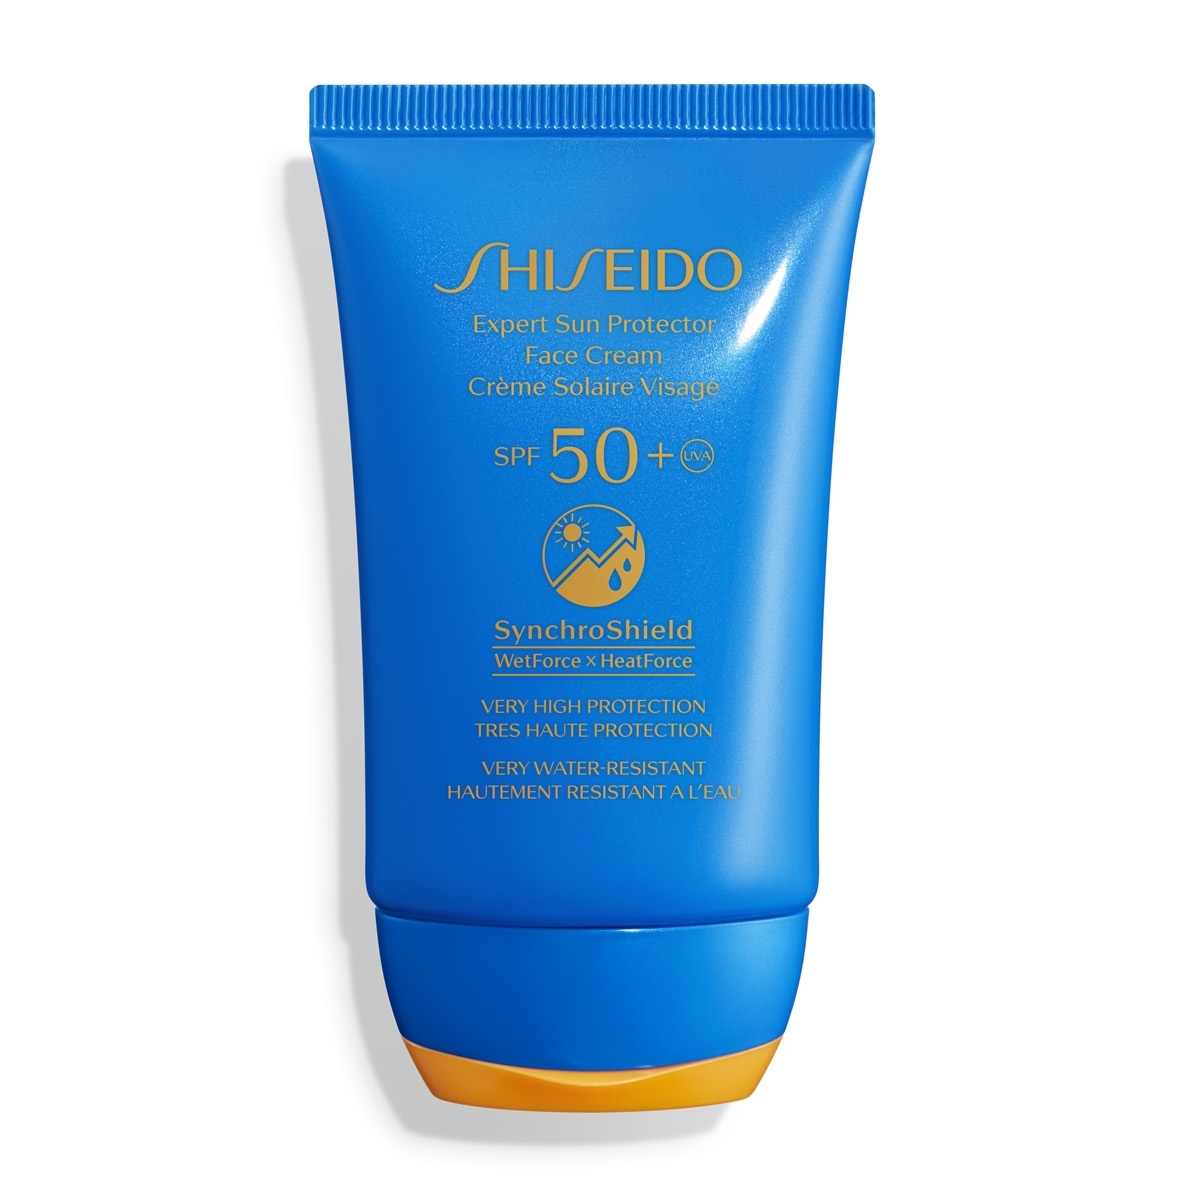 Expert Sun Protector Face Cream SPF 50+ de Shiseido.